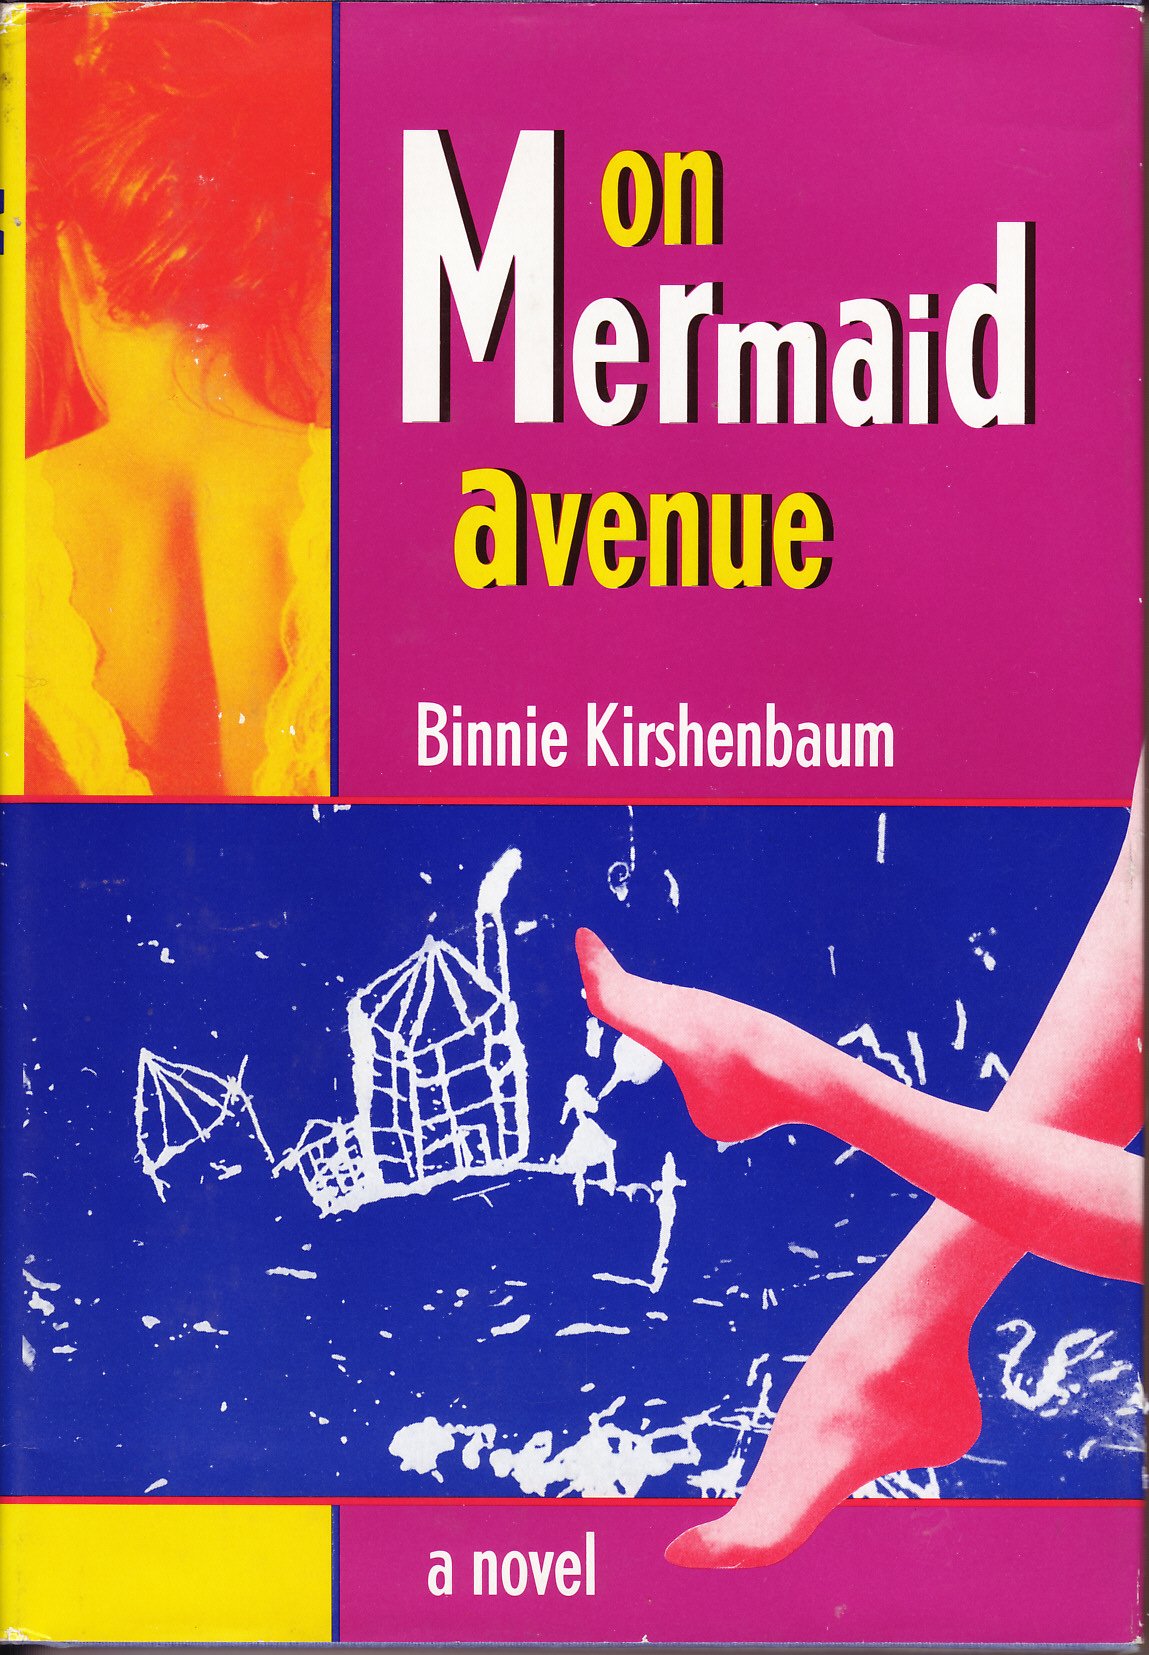 On Mermaid Avenue